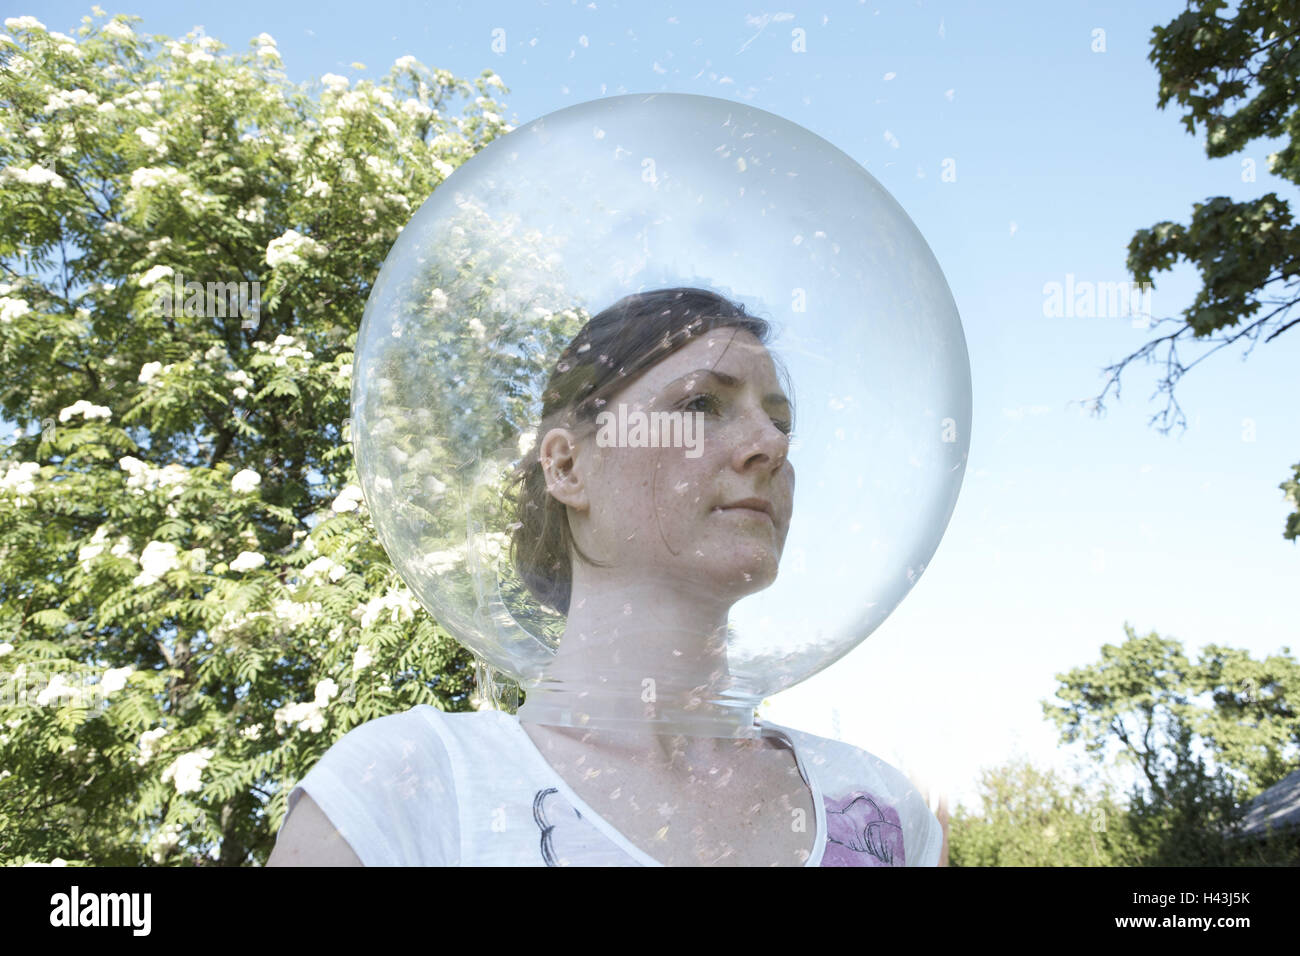 Jardín, mujer, cabeza, bola de cristal, retrato, soporte, Foto de stock